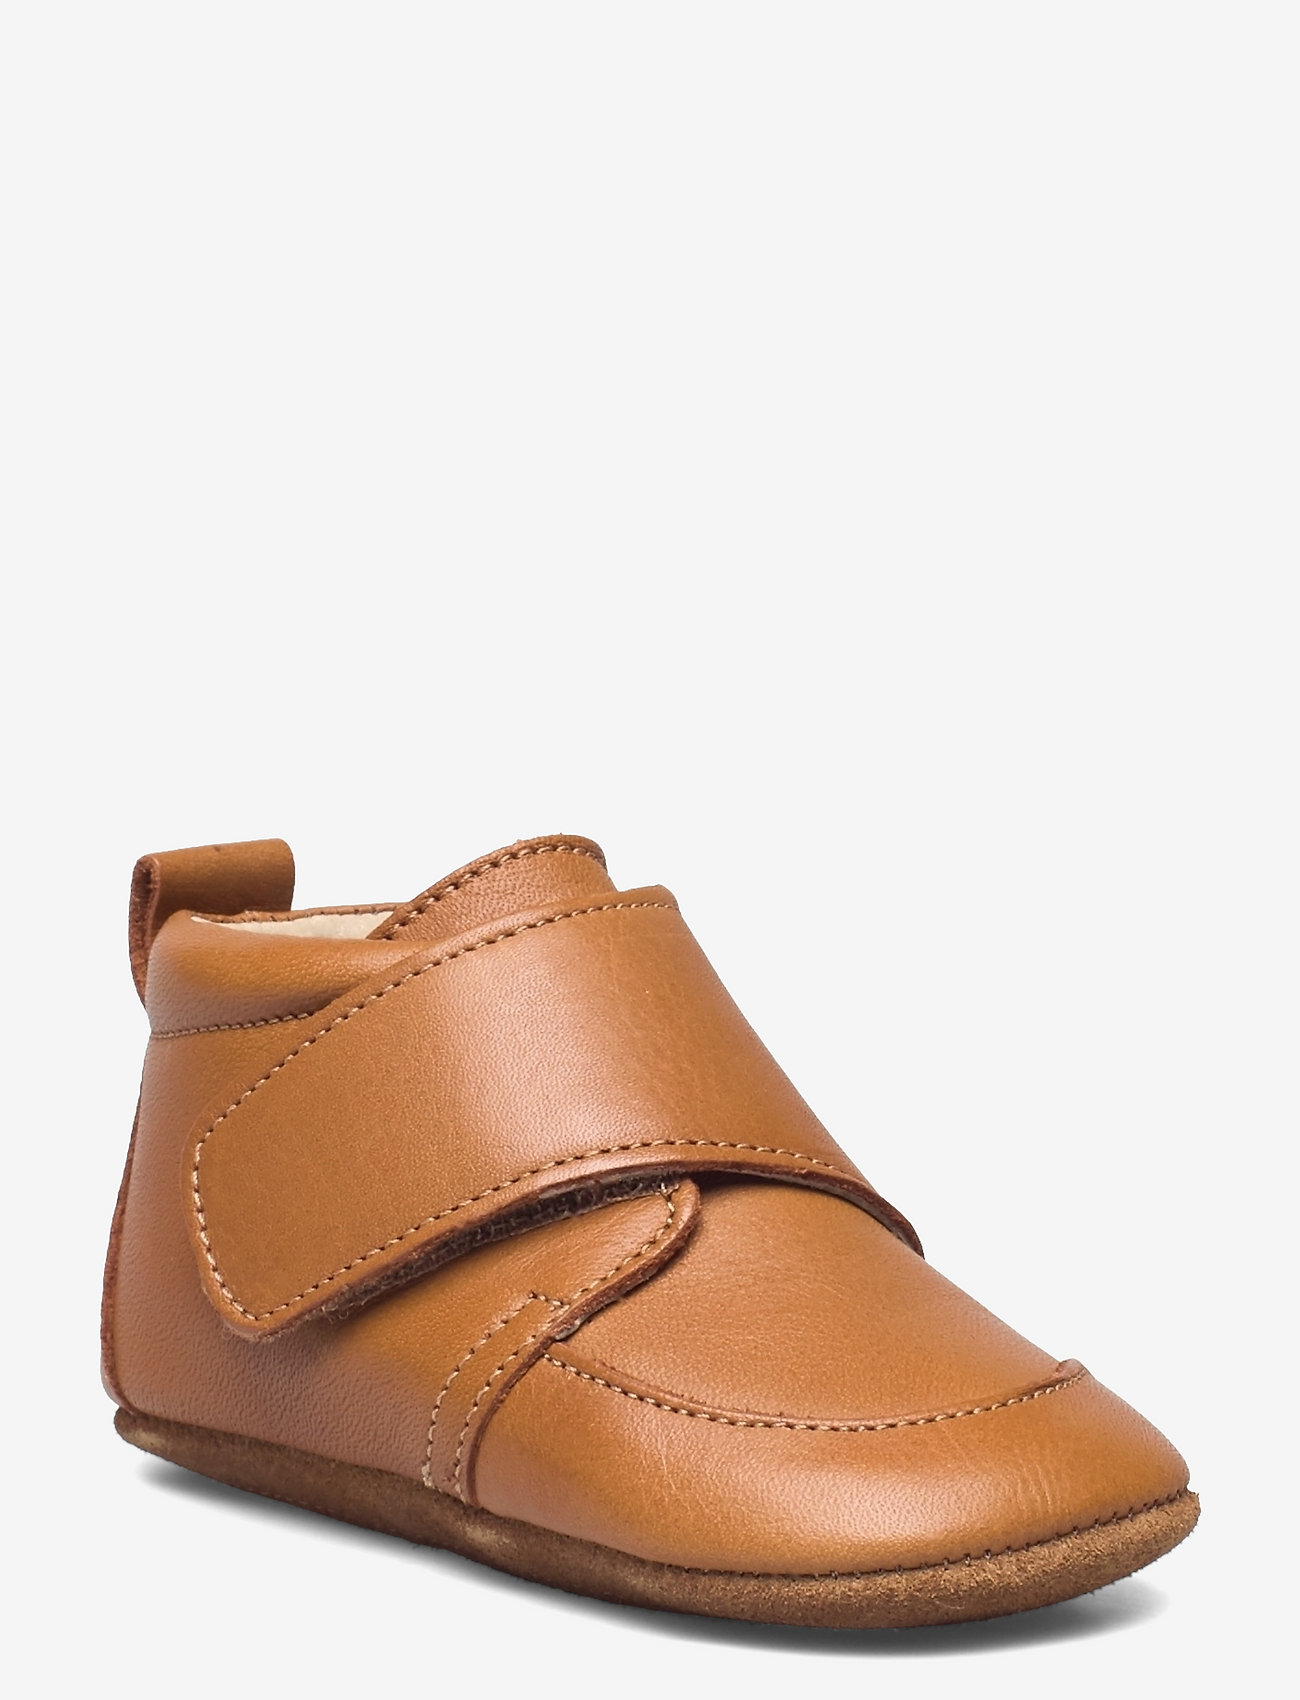 En Fant - Baby Leather slippers - dzimšanas dienas dāvanas - leather brown - 0